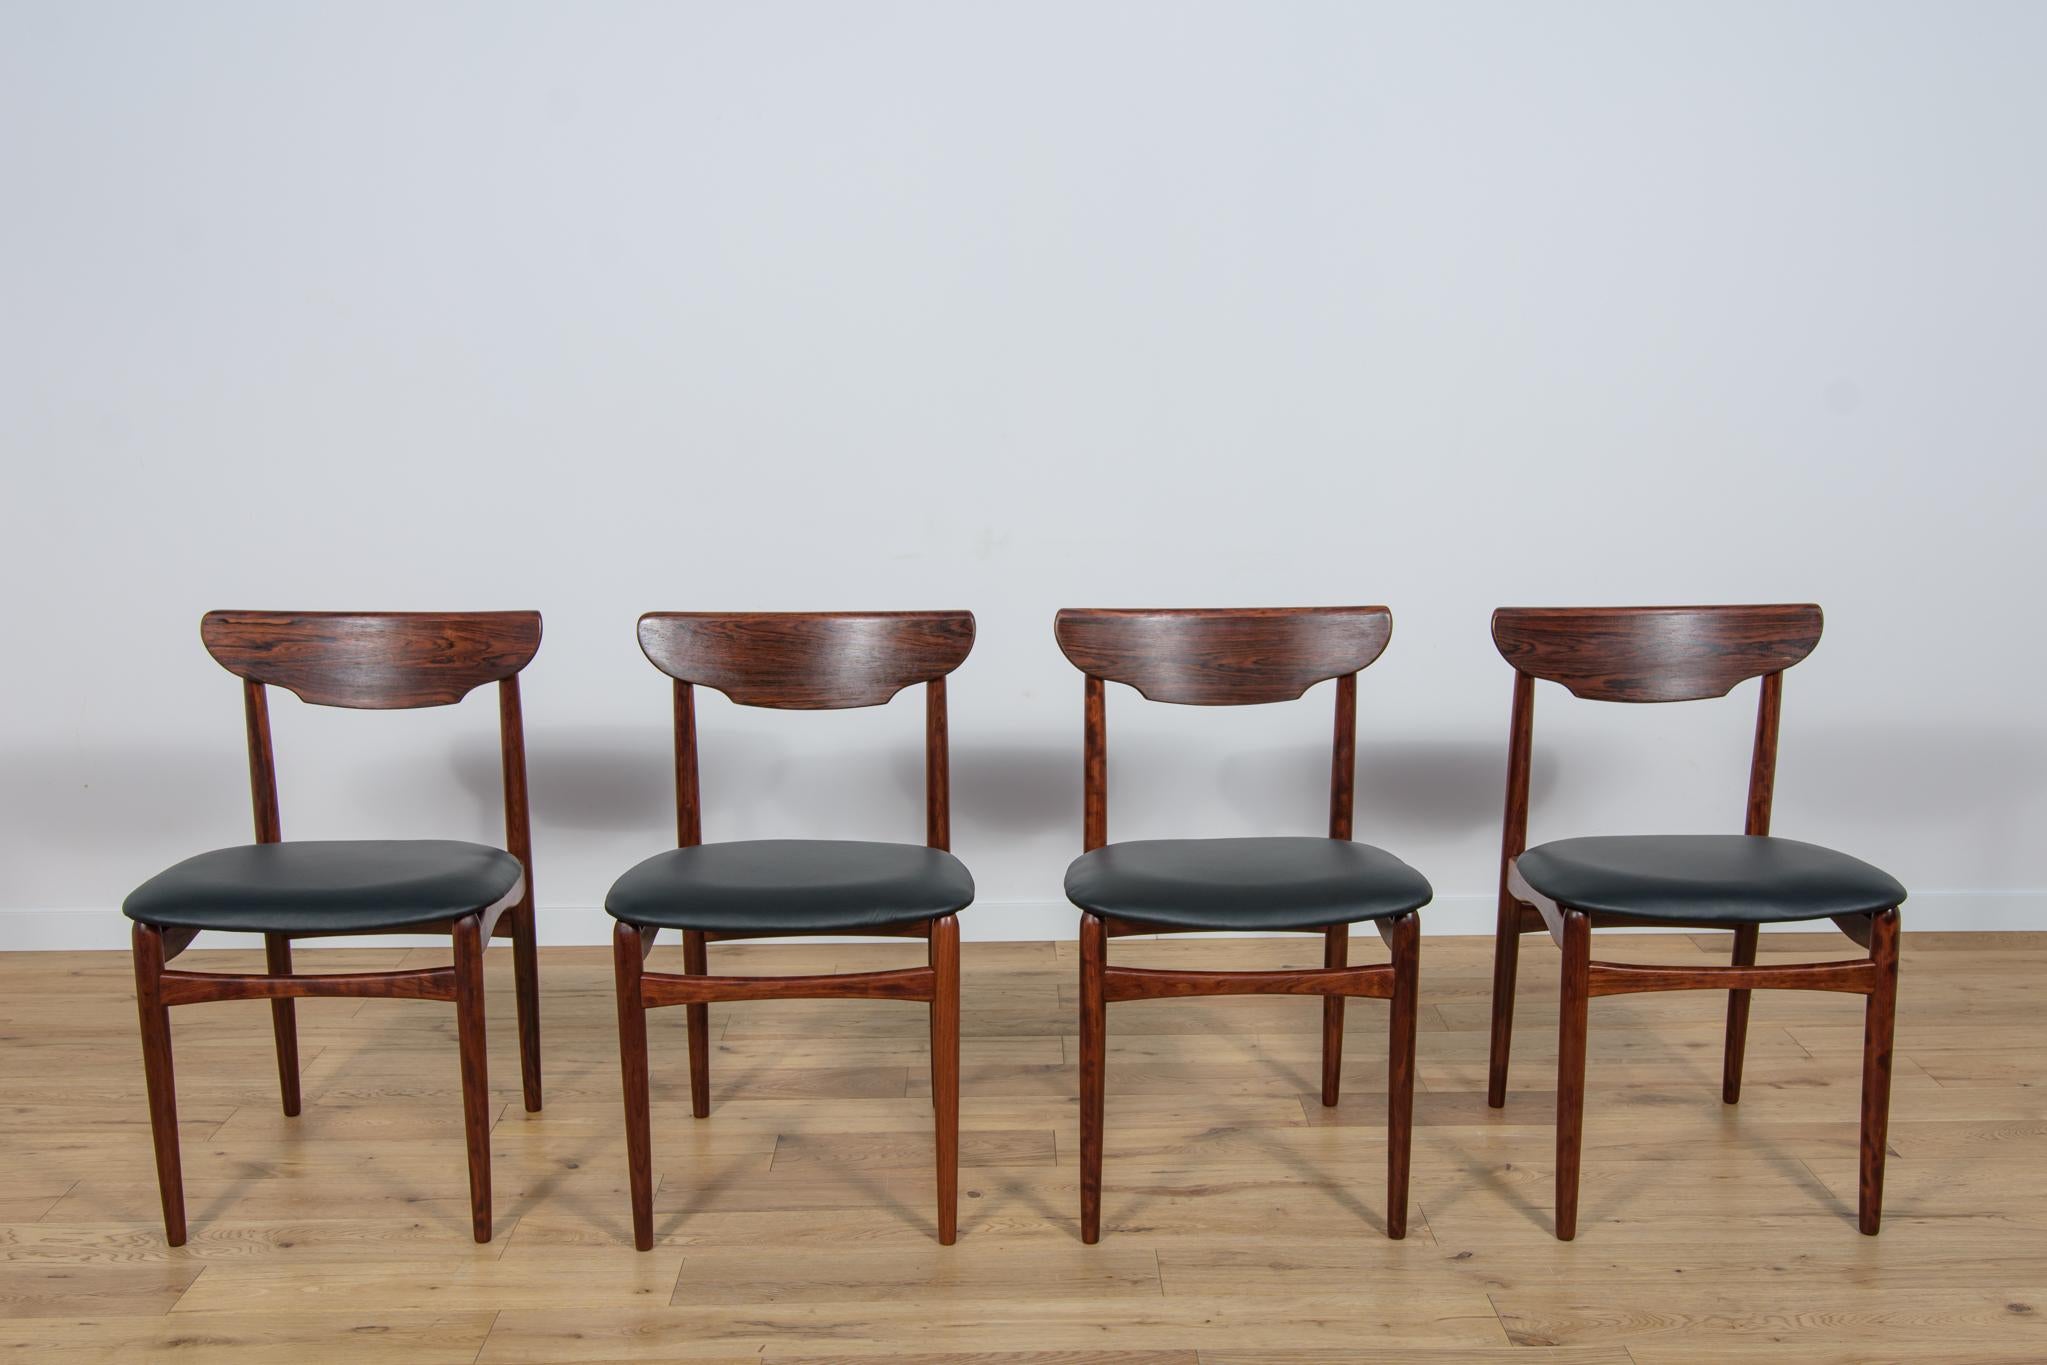 Cet ensemble de quatre chaises a été produit au Danemark dans les années 1960. Les chaises ont une forme intéressante combinée à un haut niveau d'artisanat, caractéristique du design danois, comme en témoignent, entre autres, les dossiers uniques.